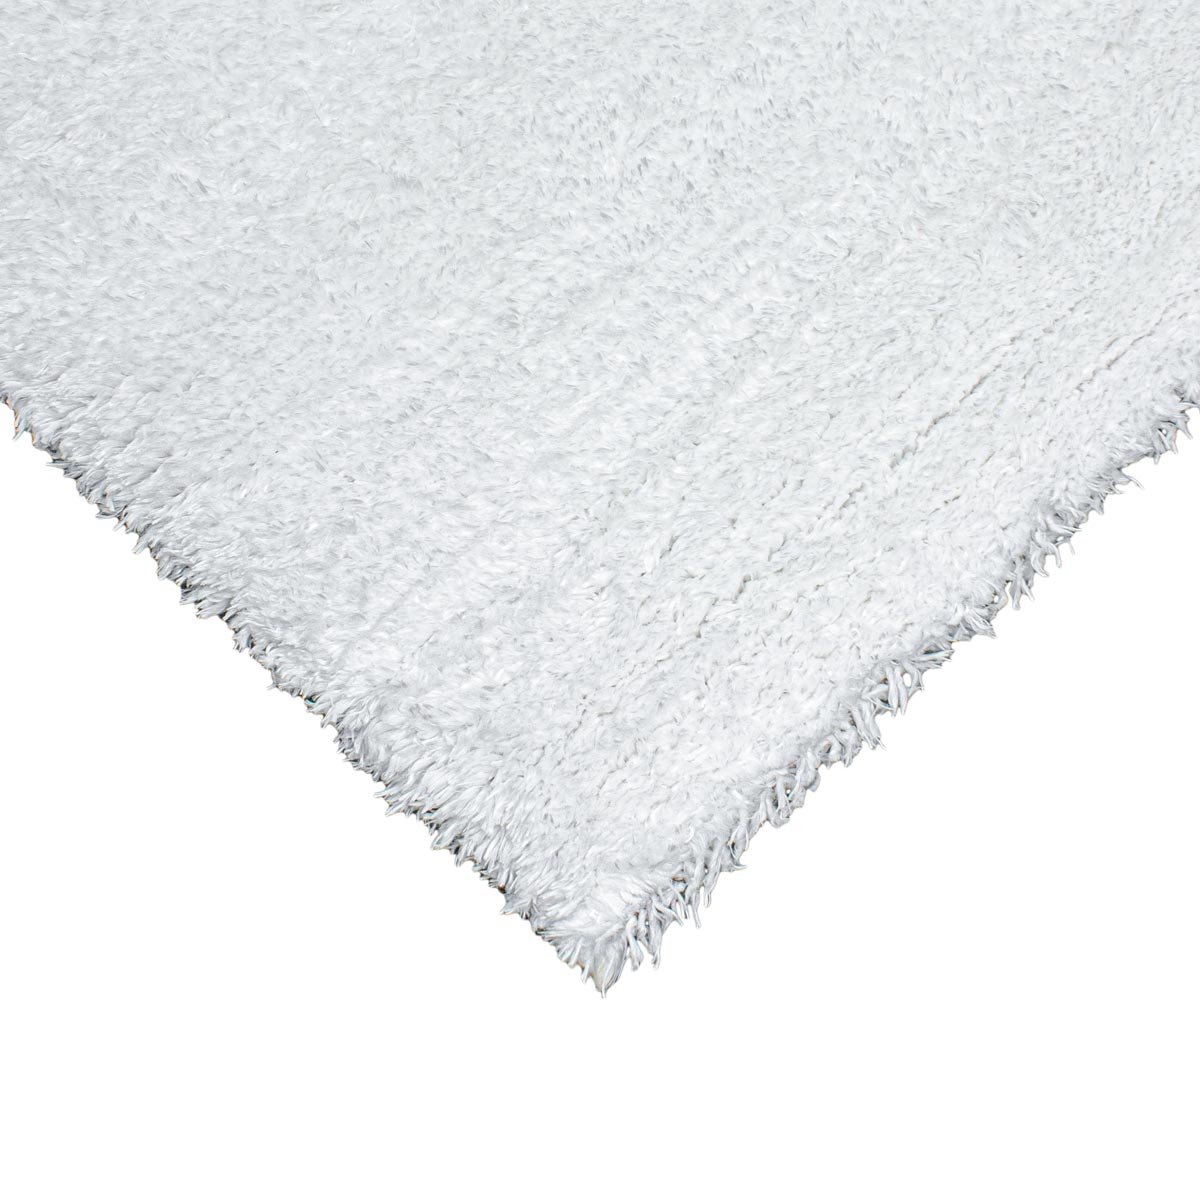 שטיח שאגי קטיפה 01 לבן ראנר | השטיח האדום